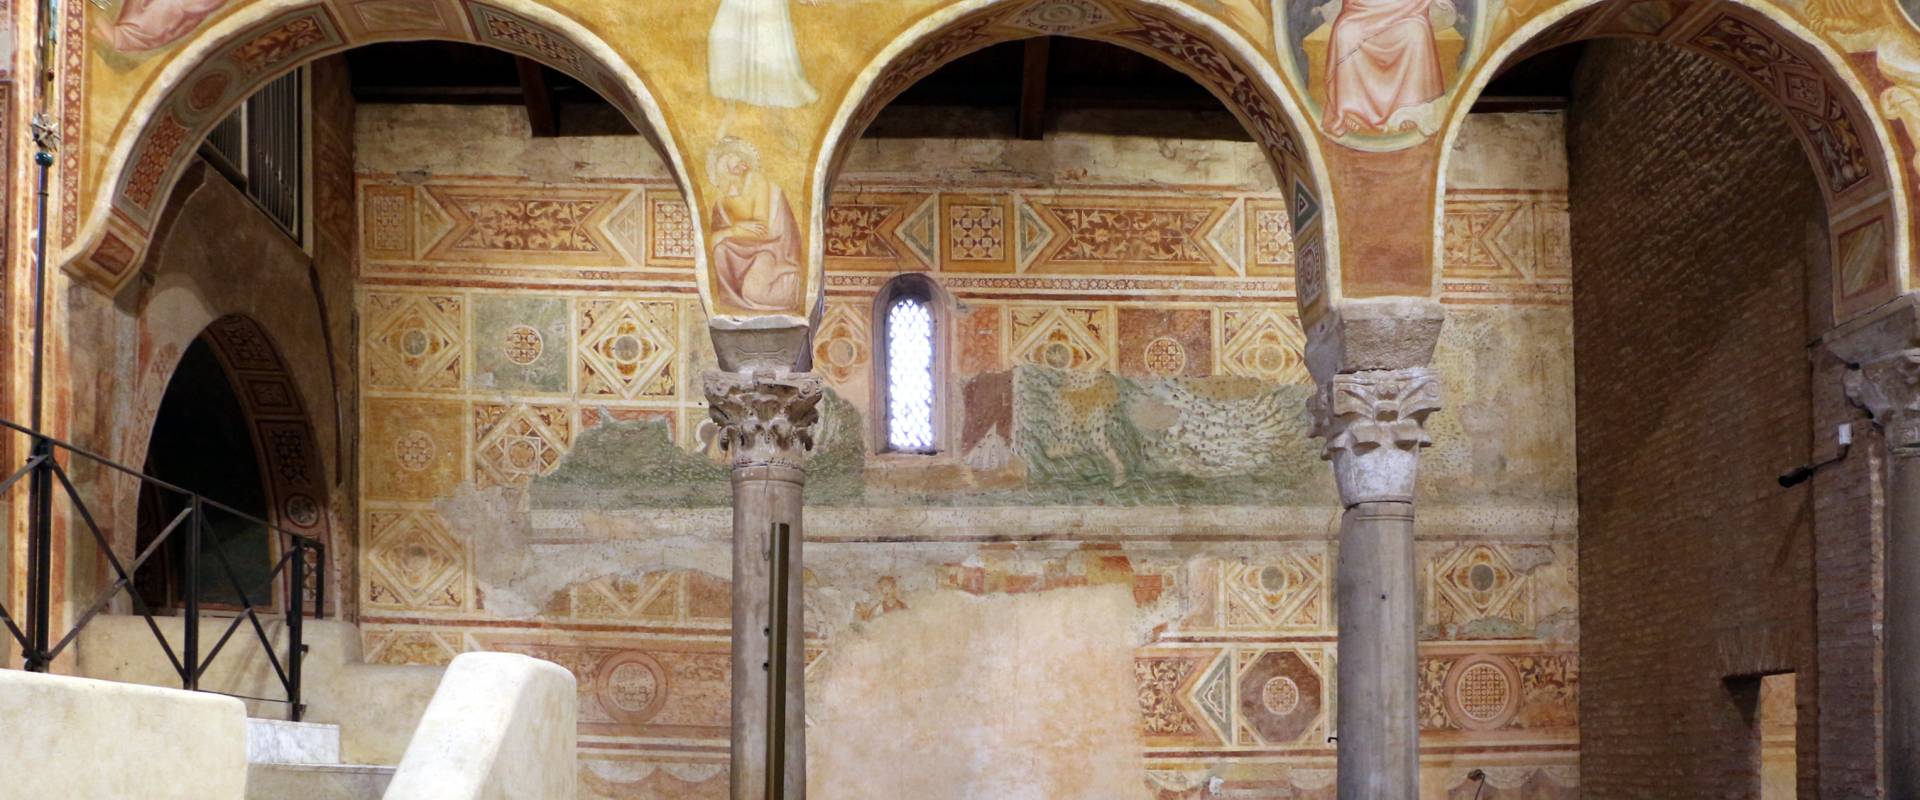 Pomposa, abbazia, interno 03, scuola bolognese, 1350 ca., foto di Sailko